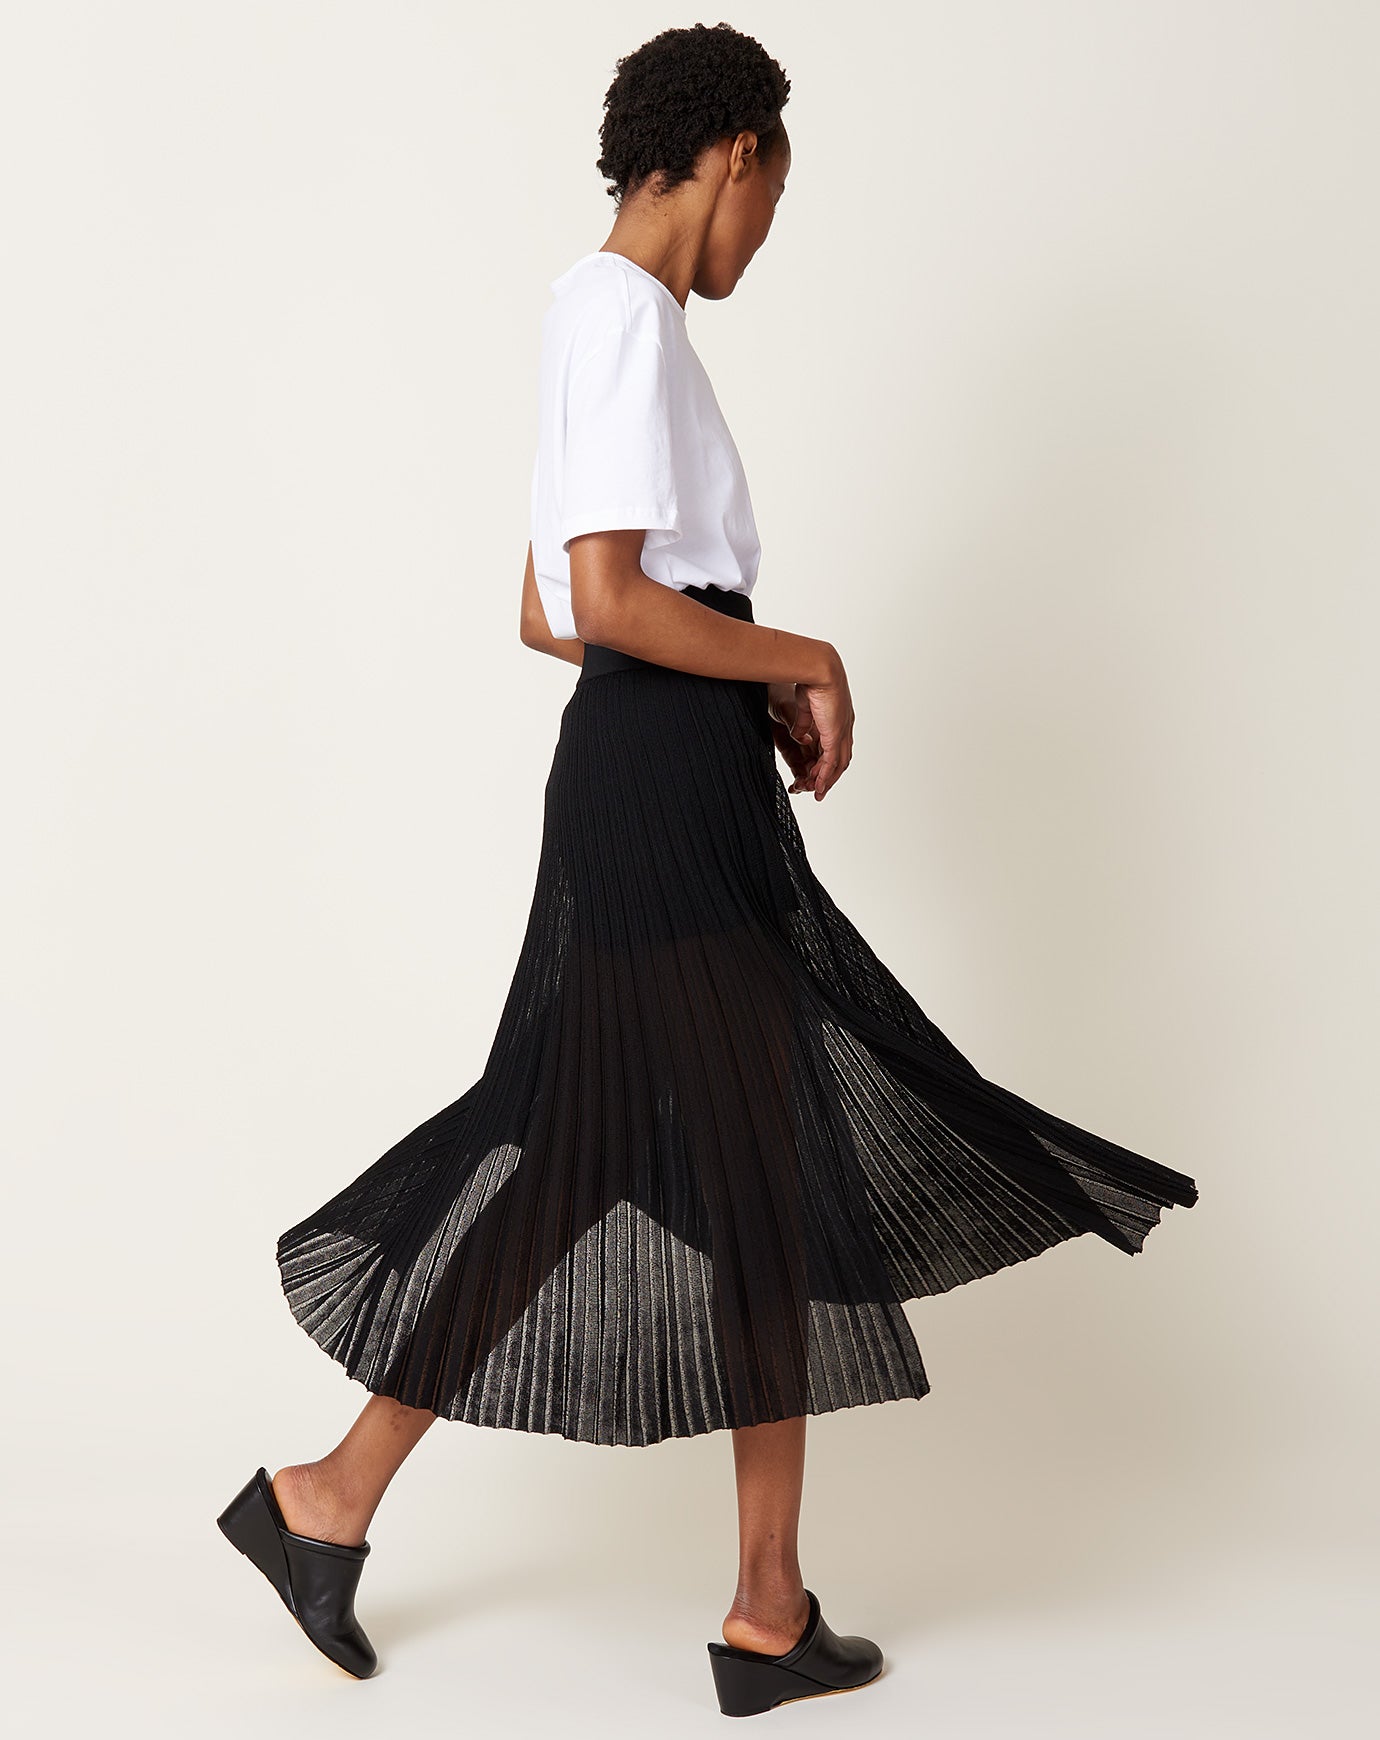 Maria McManus Sheer Pleat Skirt in Black